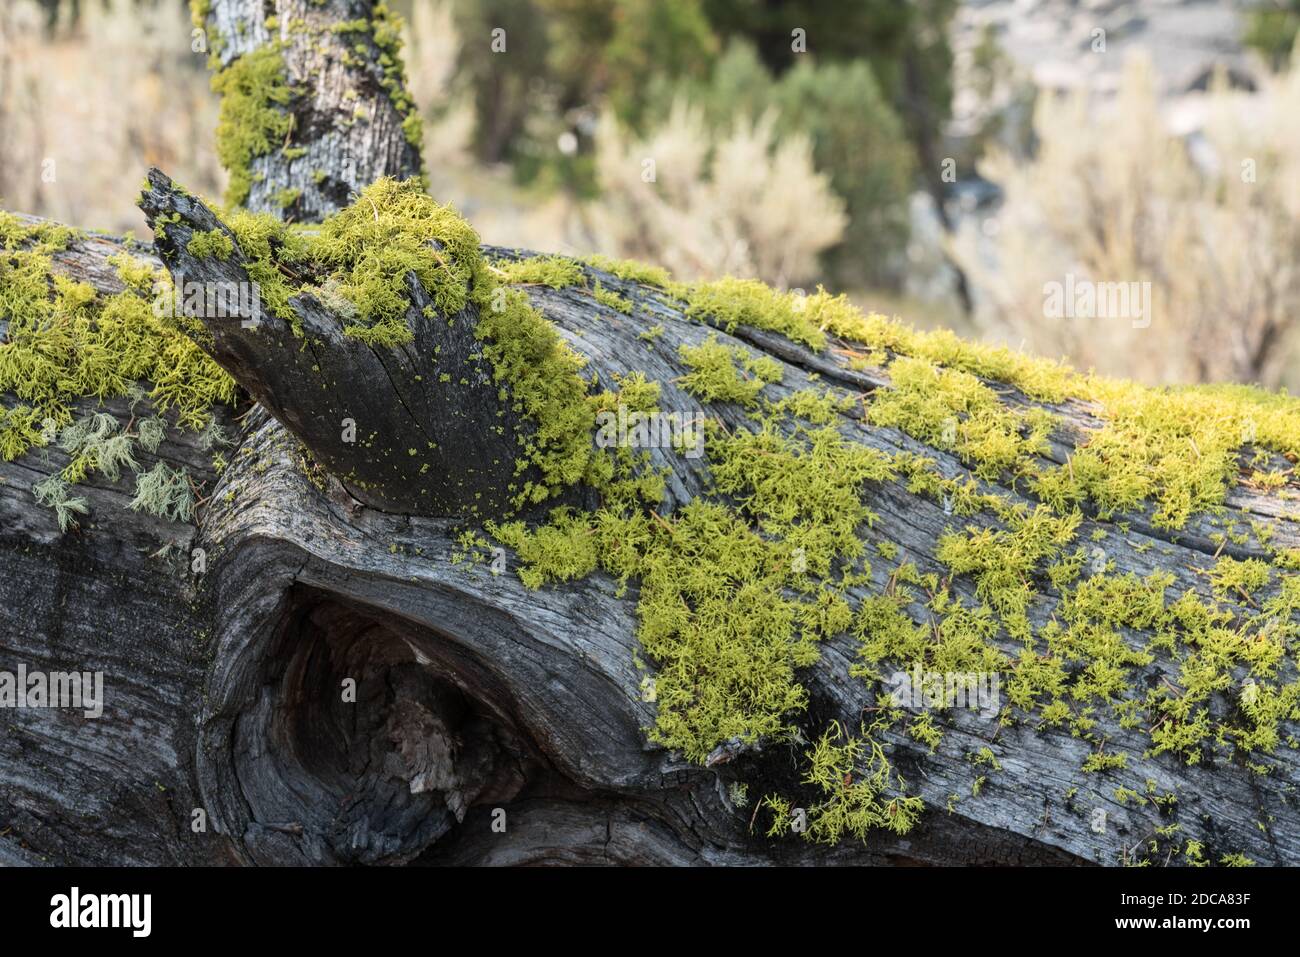 Le lichen des loups, un lichen filamenteux, pousse généralement sur l'écorce des conifères vivants et morts dans le parc national de Yellowstone, Wyoming, États-Unis. Banque D'Images